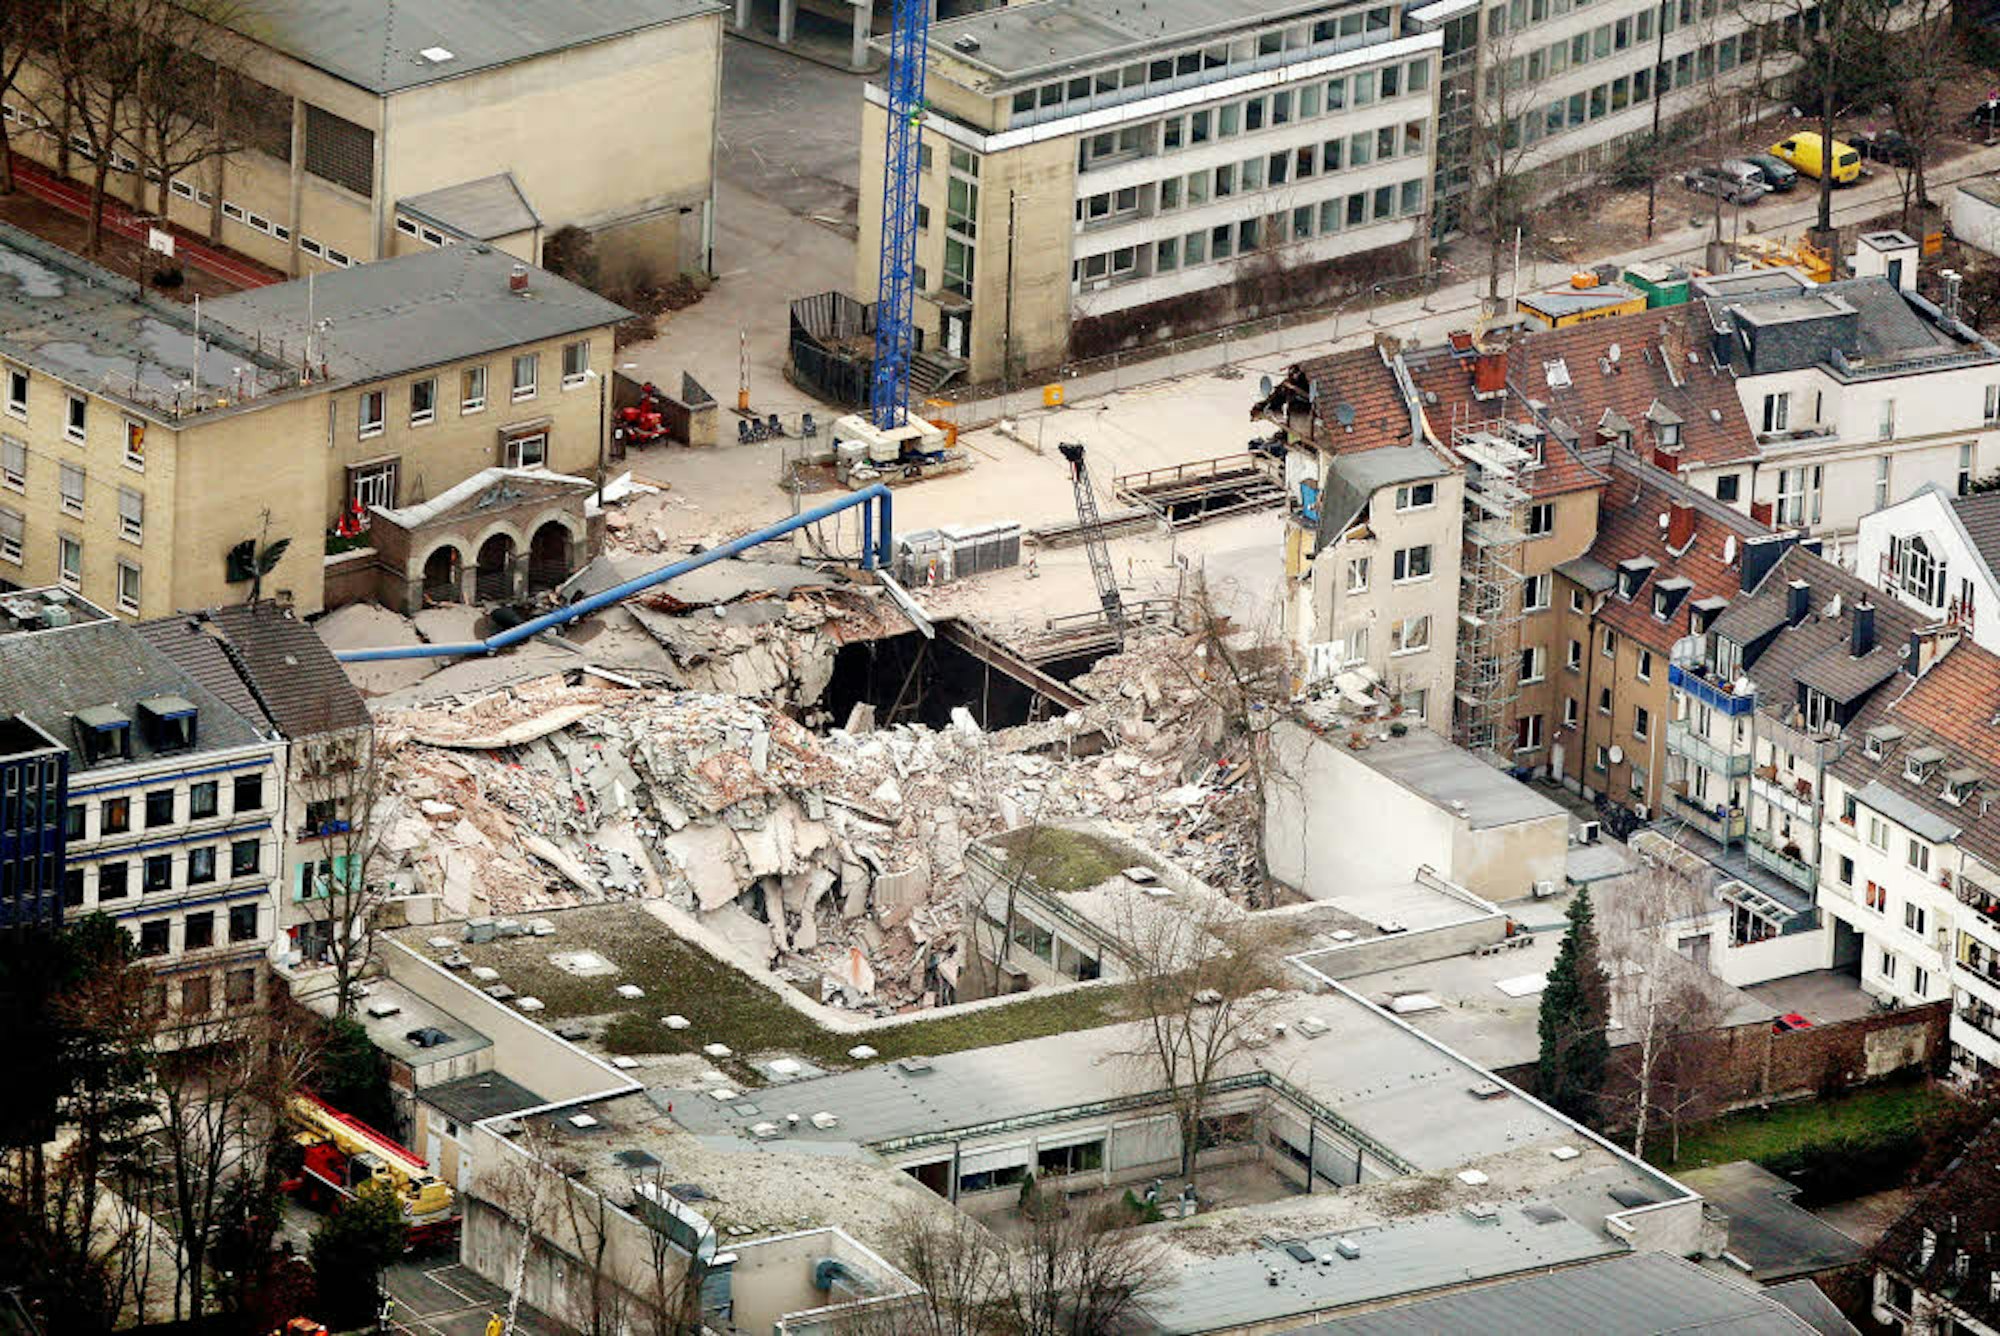 Am 4. März 2009 stürzte das Stadtarchiv am Kölner Waidmarkt ein. Der Euskirchener Marco Schnönecker überlebte das Unglück.